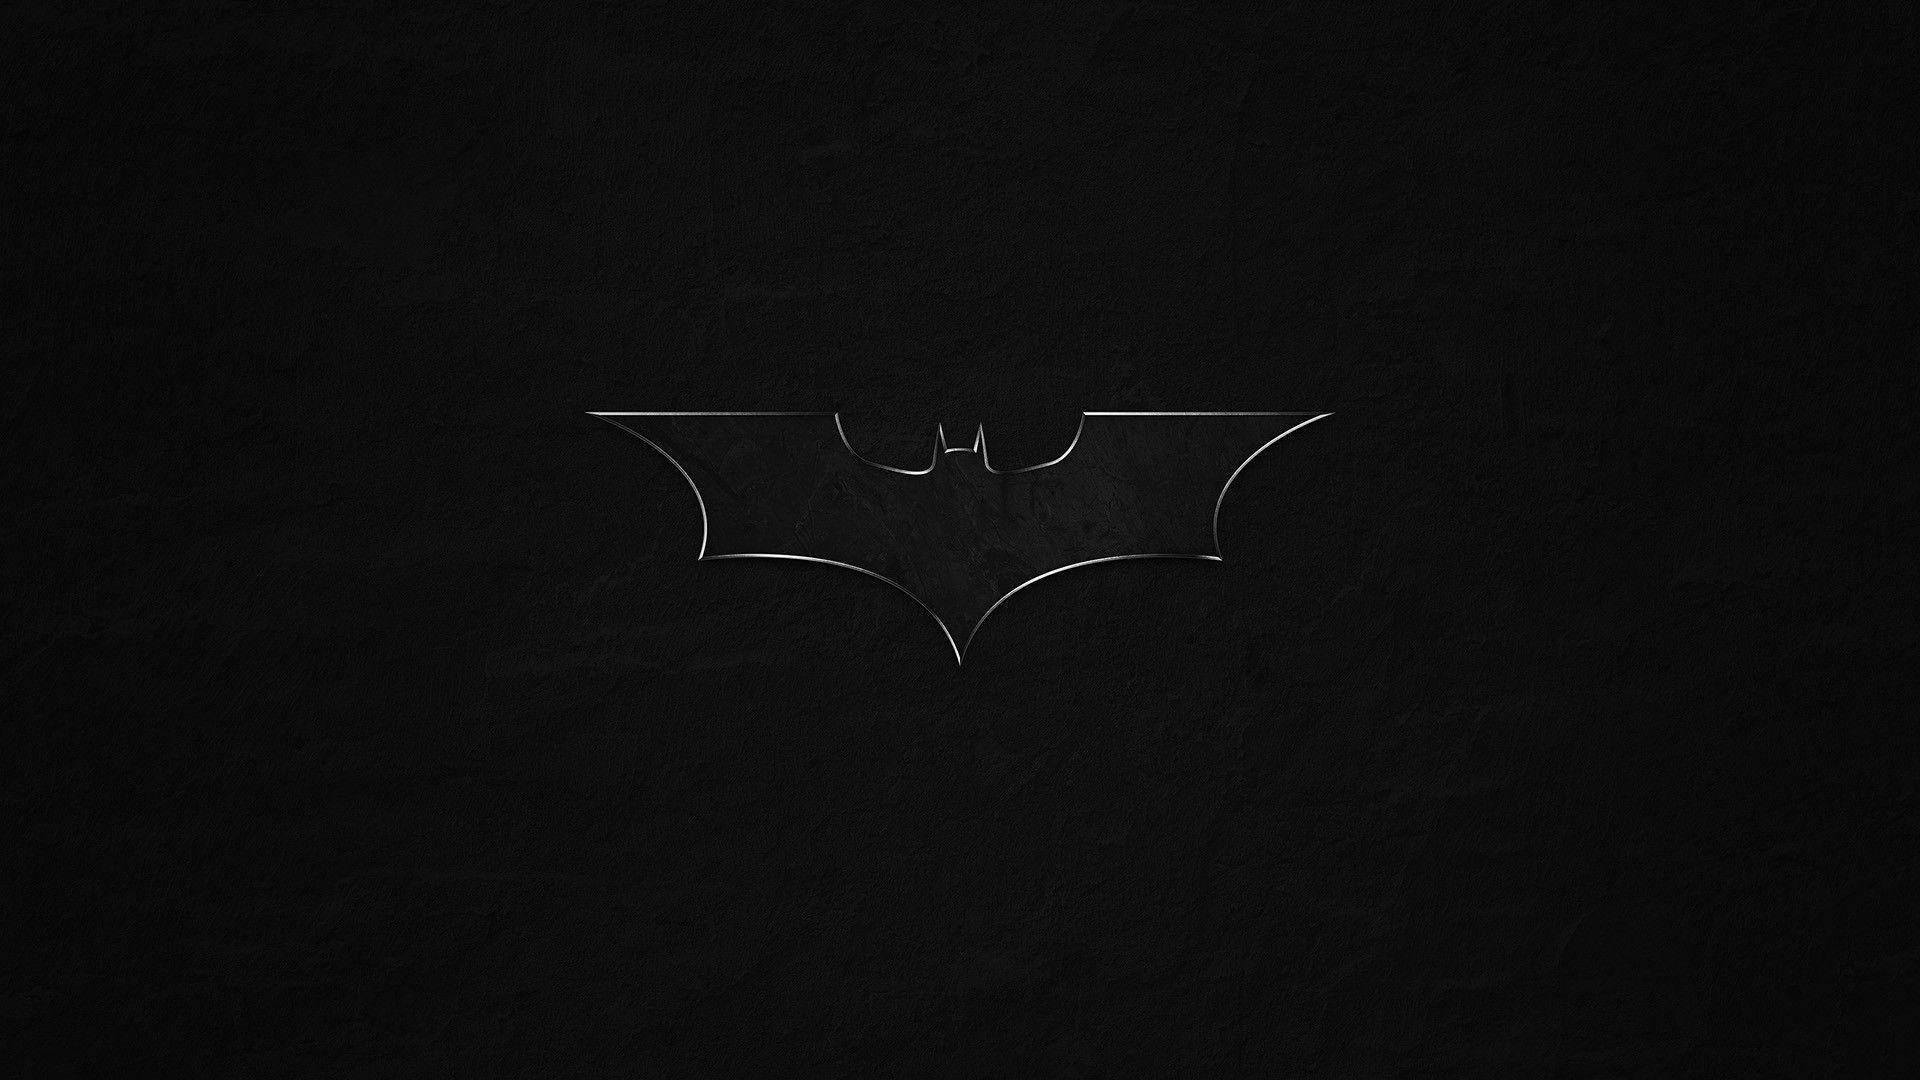 Batman Dark Knight 4k Wallpapers  HD Wallpapers  ID 26625